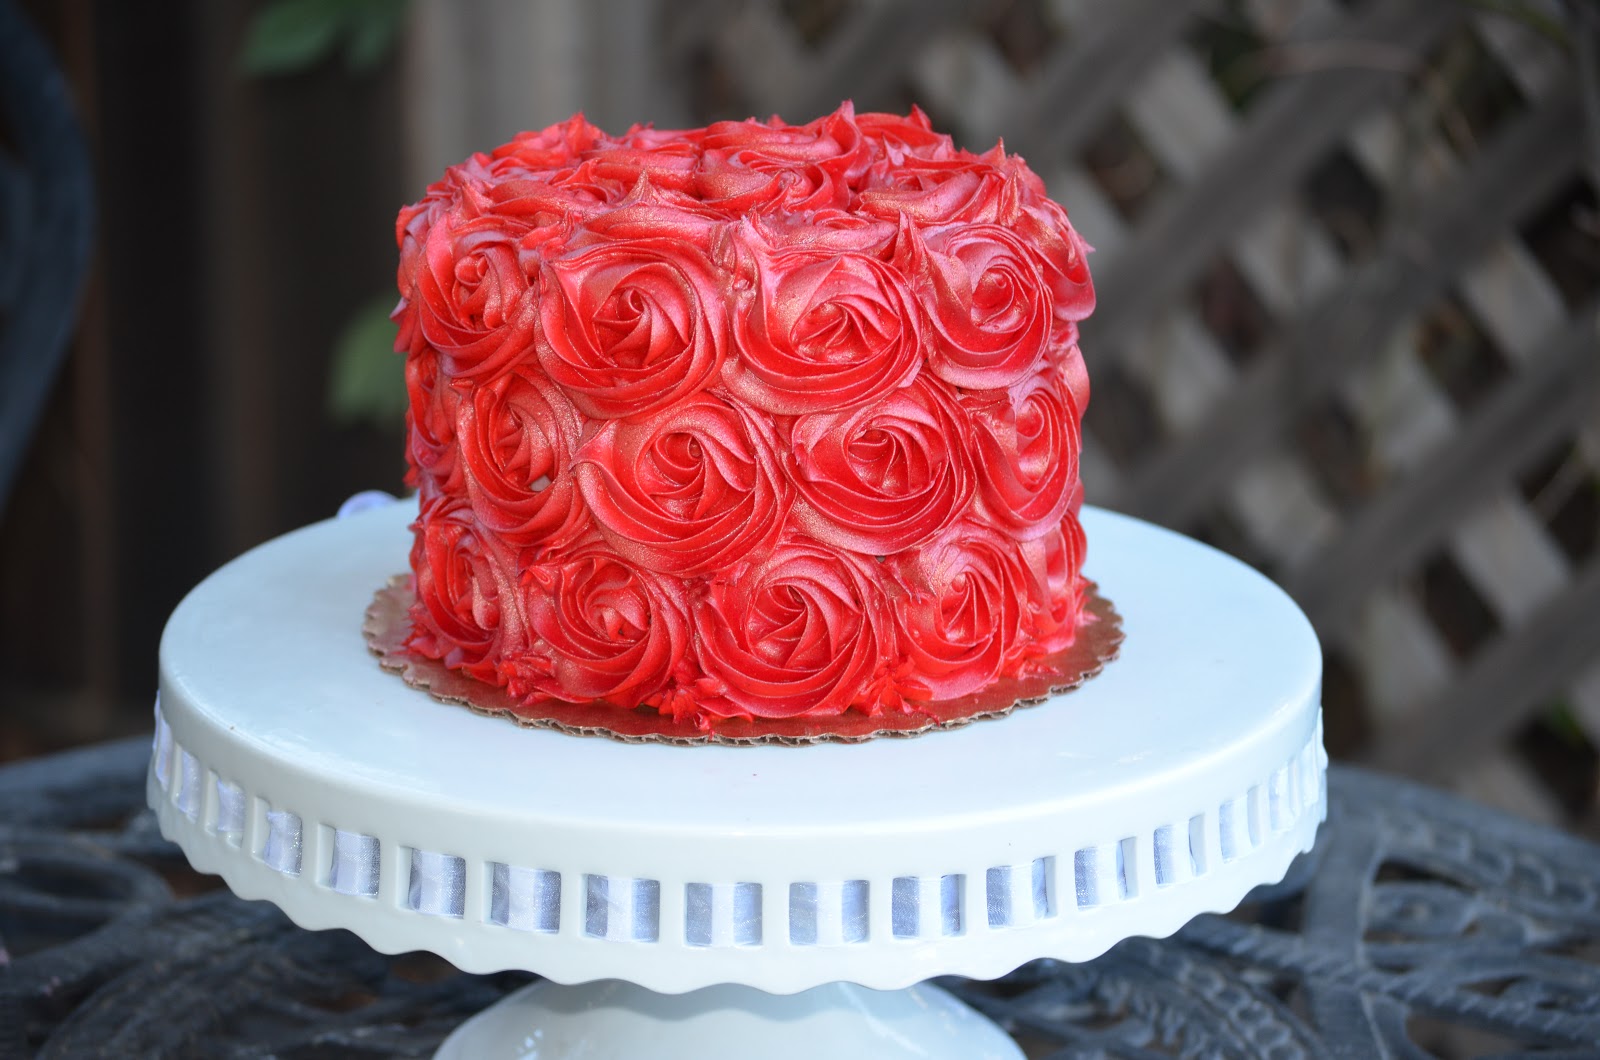 Тортдеко. Украшение торта розами. Торт с розочками. Торт с кремовыми цветами. Торт с розами из крема.